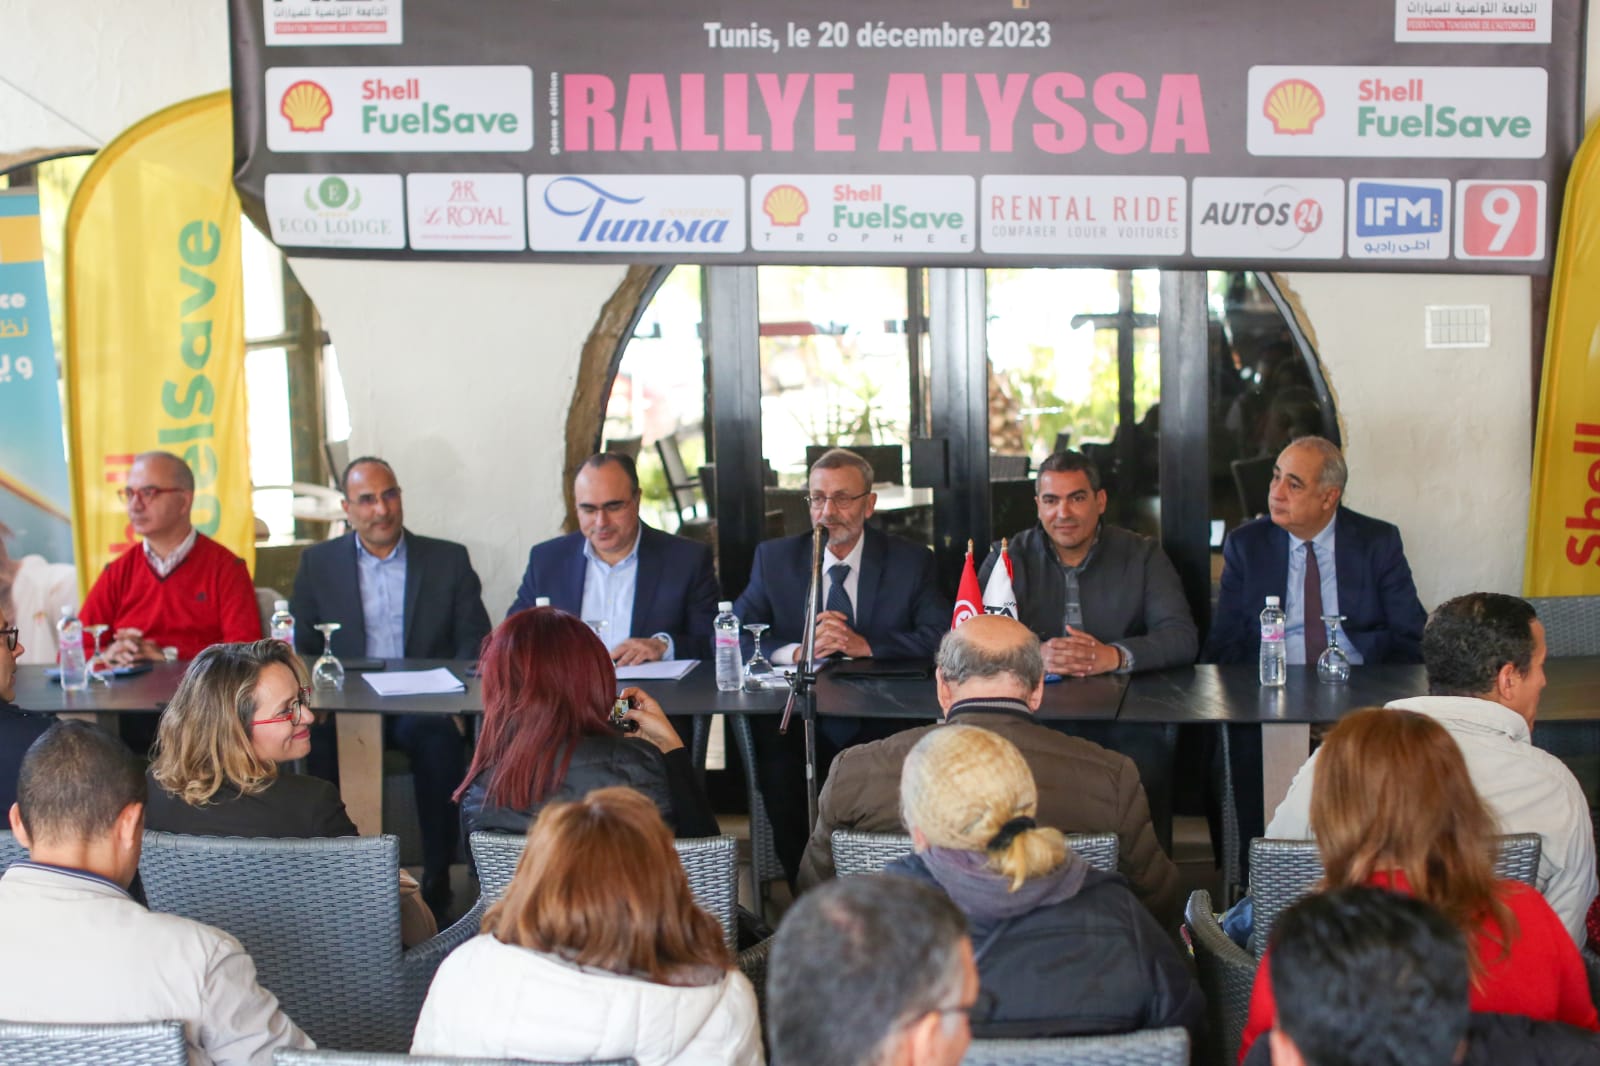 Rallye Alyssa-Trophée Shell FuelSave consacre la paix,la sécurité routière et l’économie d’énergie